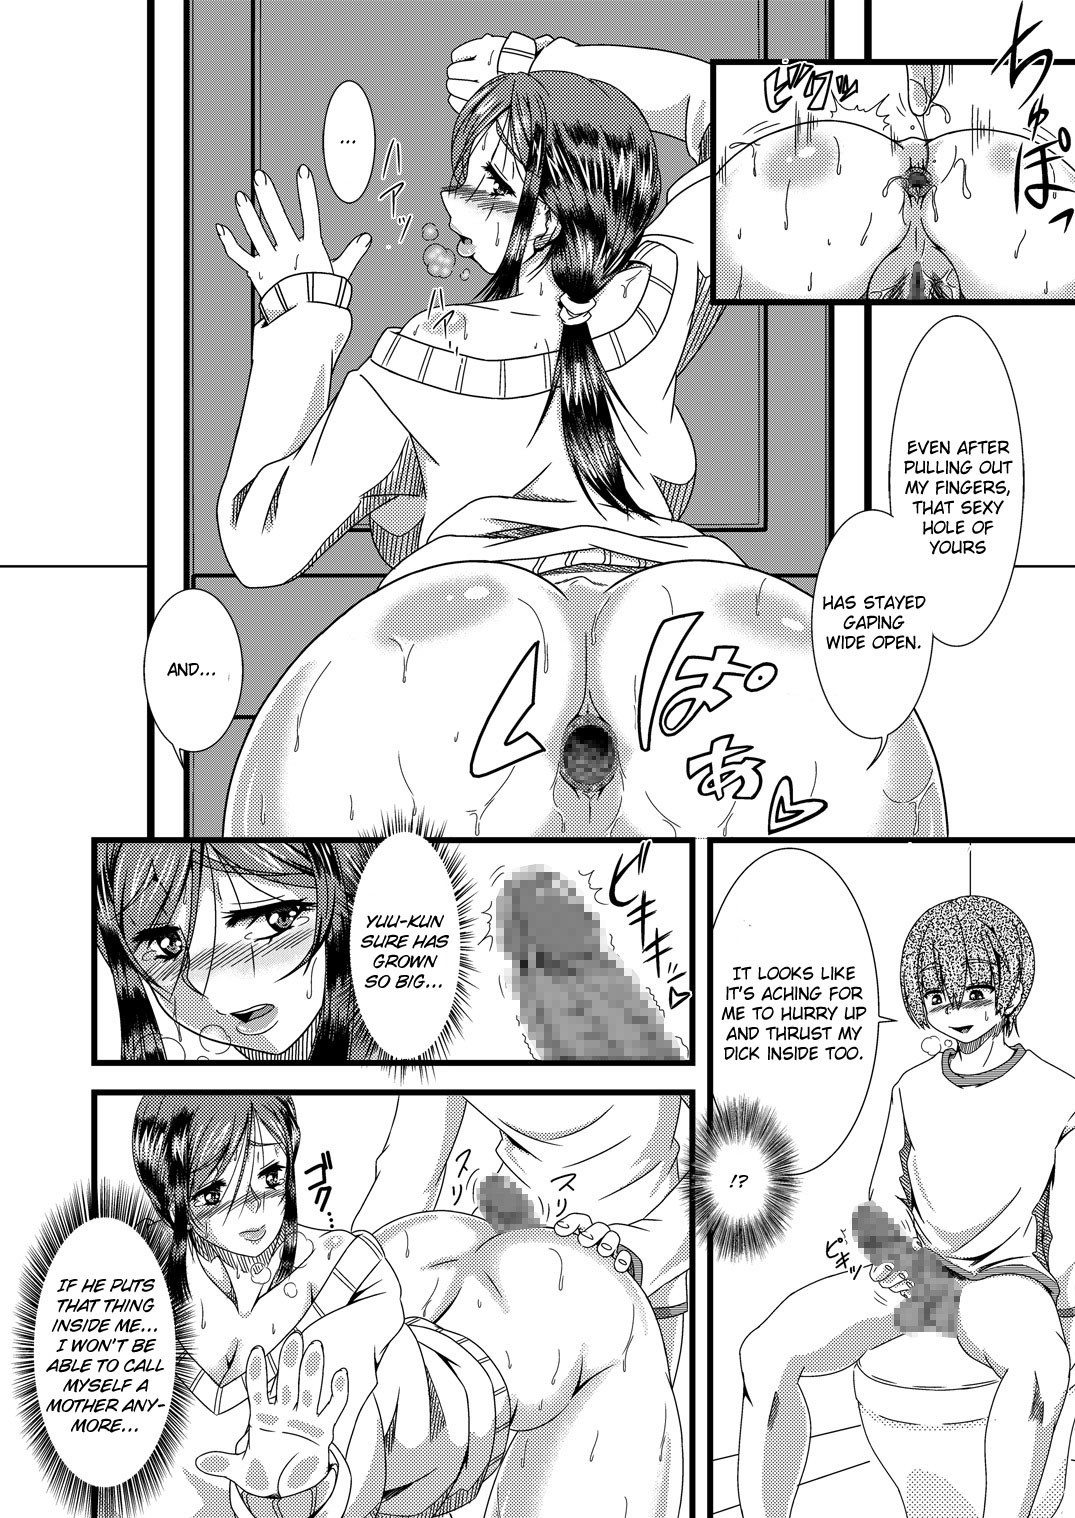 Ass eating hentai manga